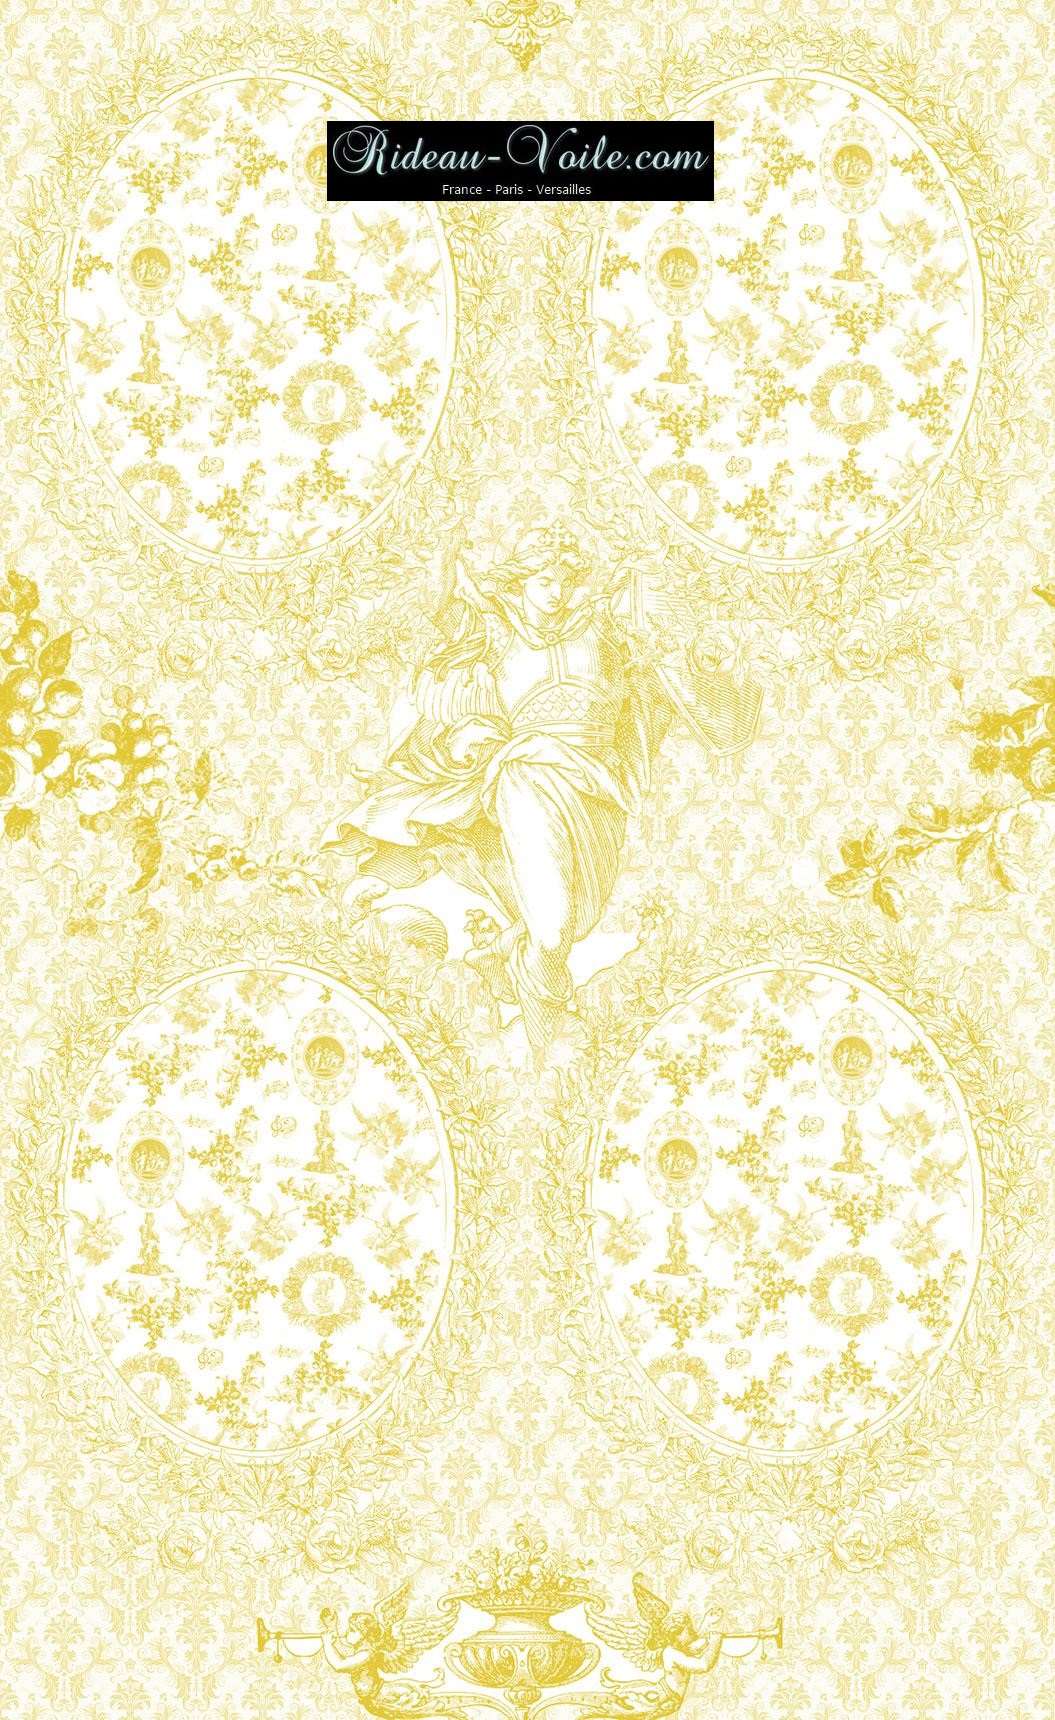 Toile de Jouy tissu ameublement motif imprimé décoration tapisserie au mètre confection sur mesure jaune